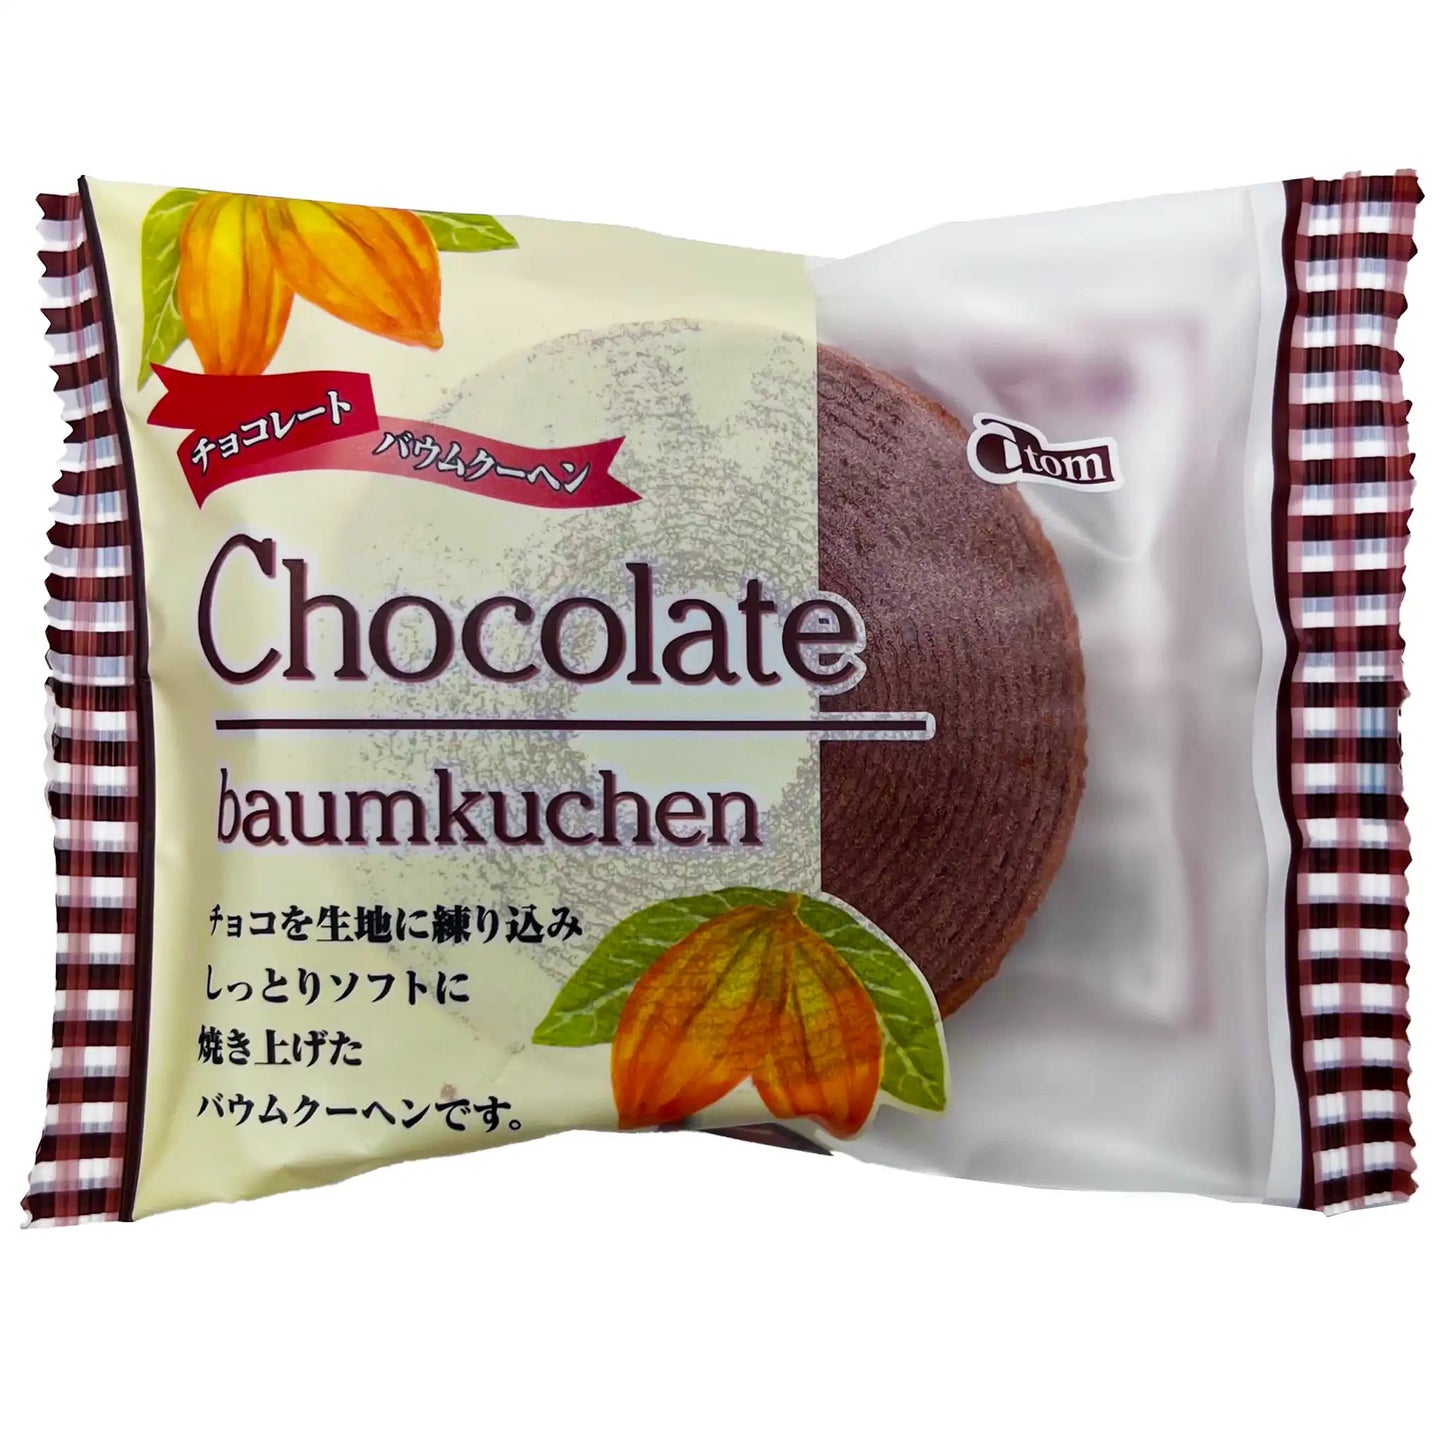 Atom Chocolate Baumkuchen 1 Piece 80 g